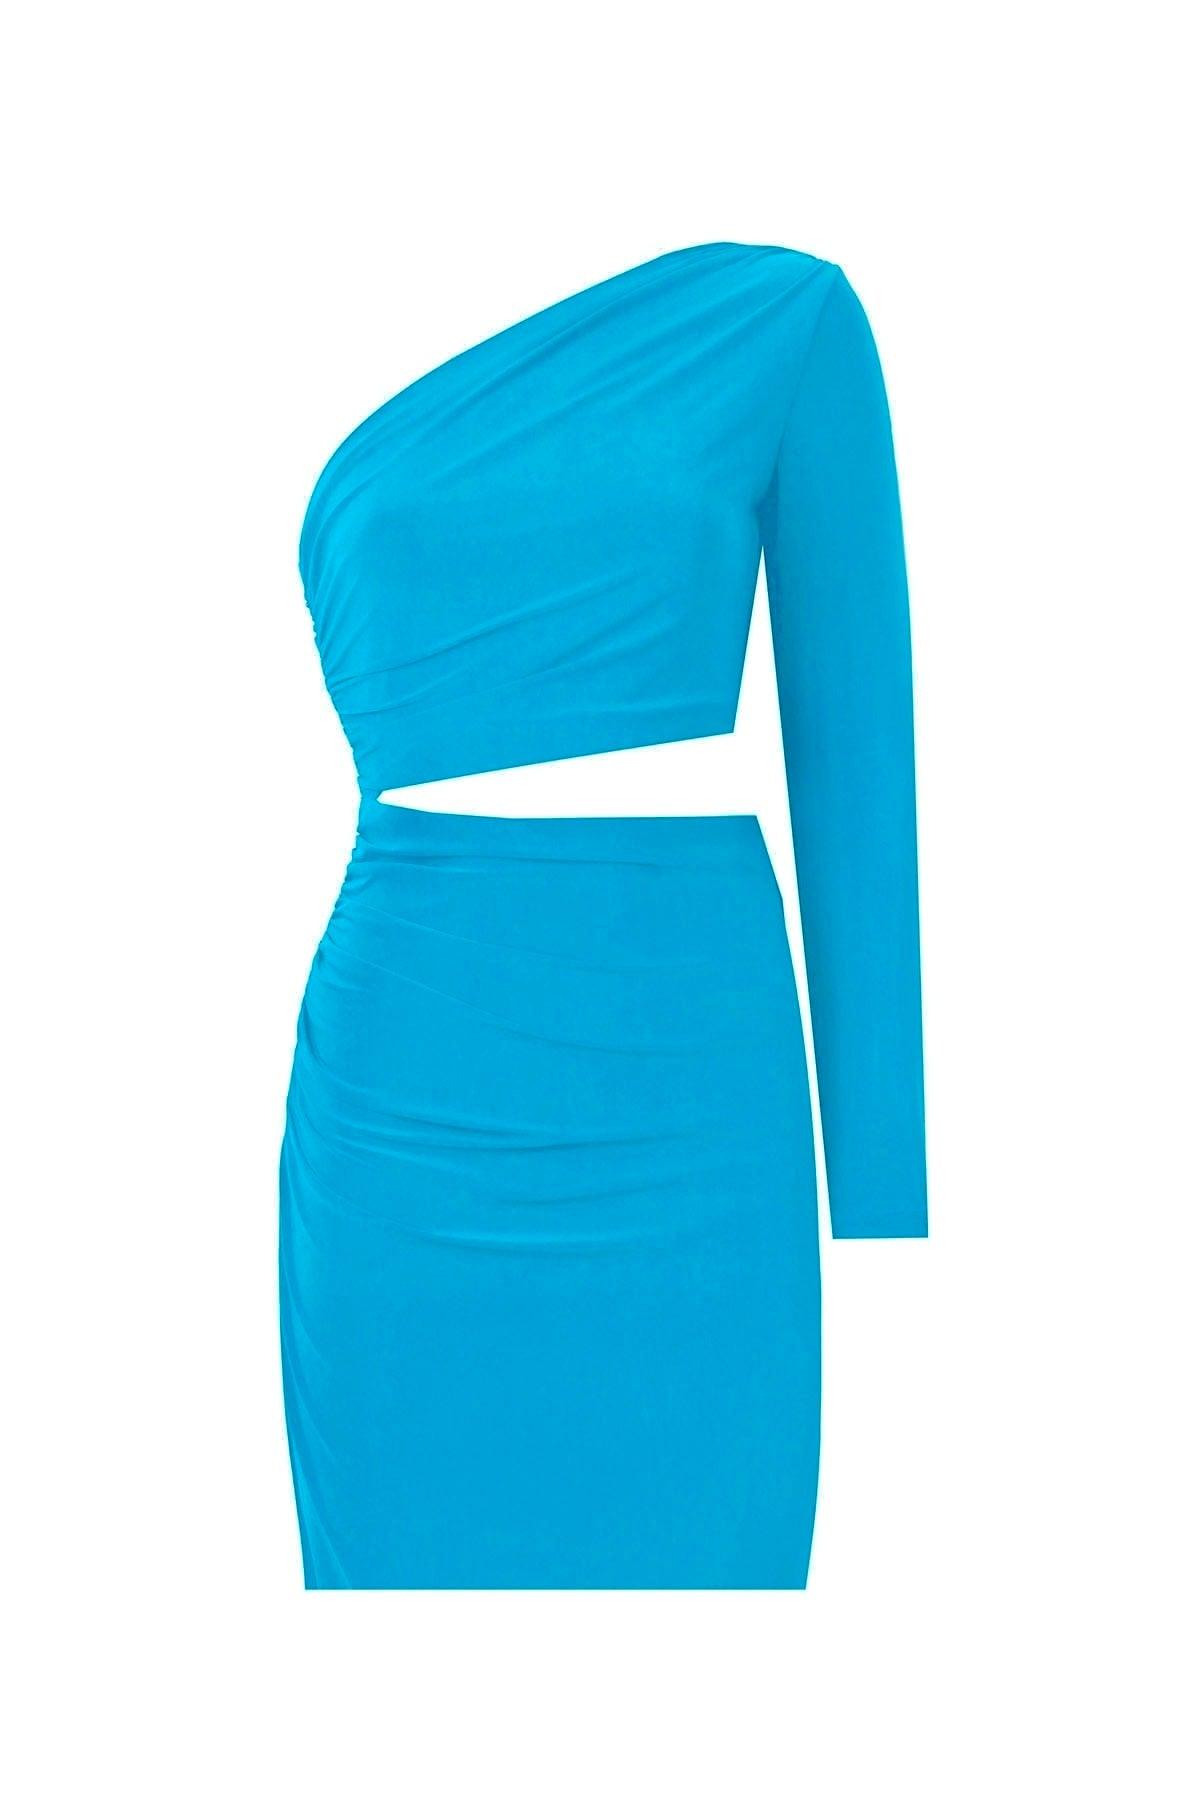 Blue Single Sleeve Side Draped Belly Window Mini Evening Dress - Swordslife